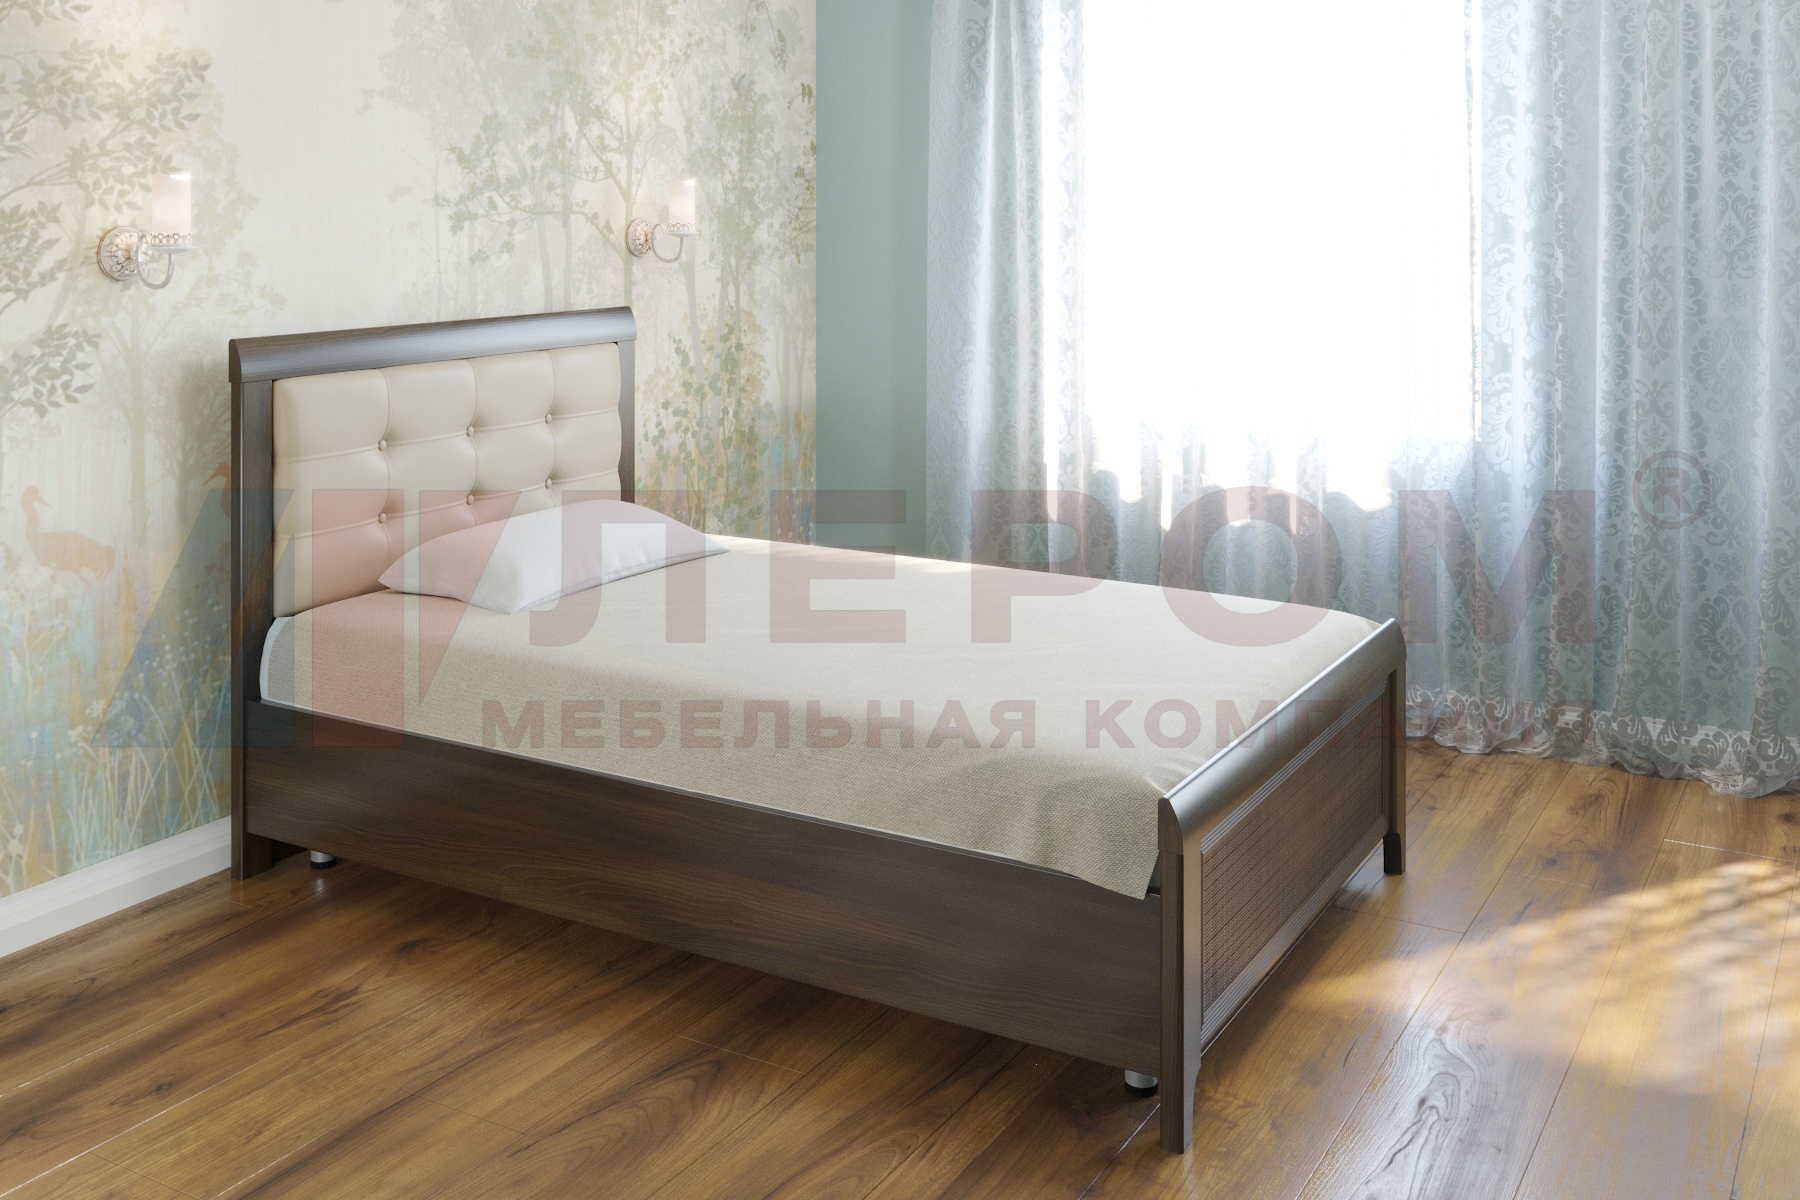 КР-2031 кровать (1,2*2,0)